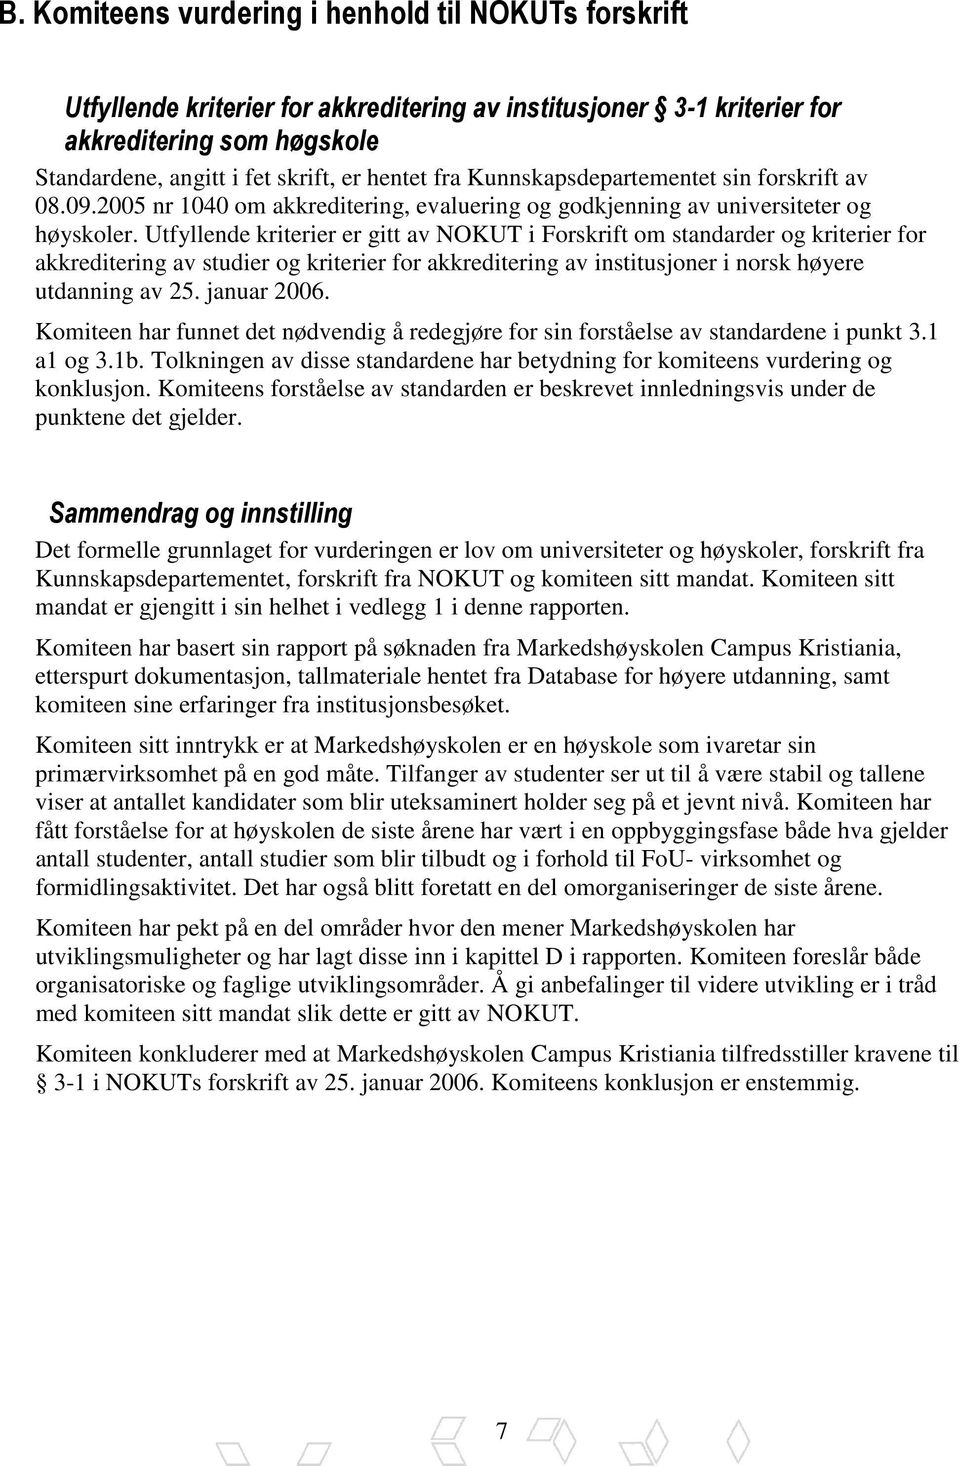 Utfyllende kriterier er gitt av NOKUT i Forskrift om standarder og kriterier for akkreditering av studier og kriterier for akkreditering av institusjoner i norsk høyere utdanning av 25. januar 2006.